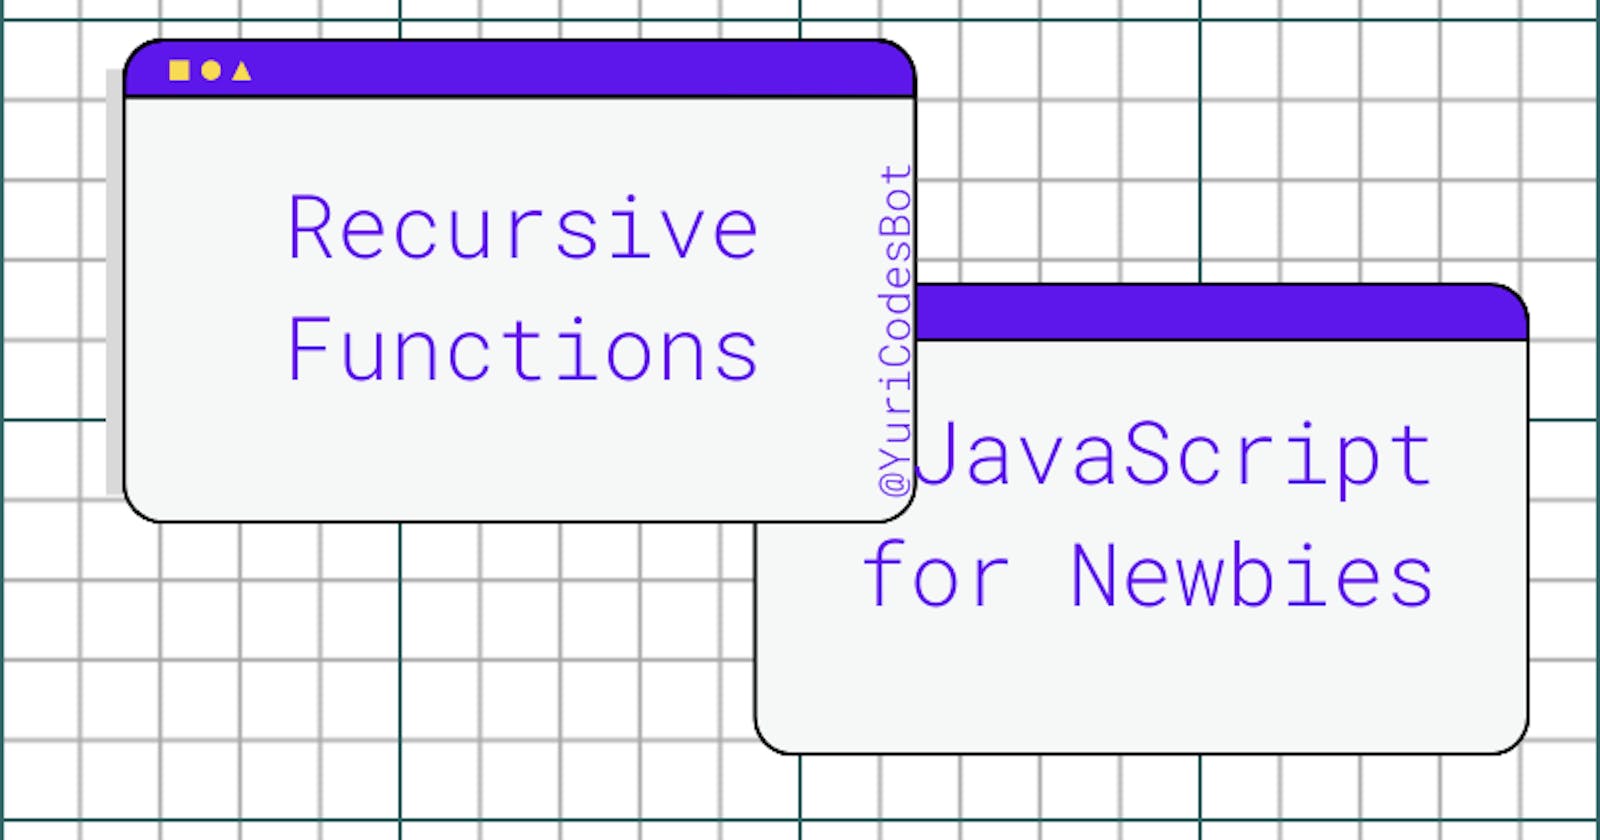 Recursion in JavaScript